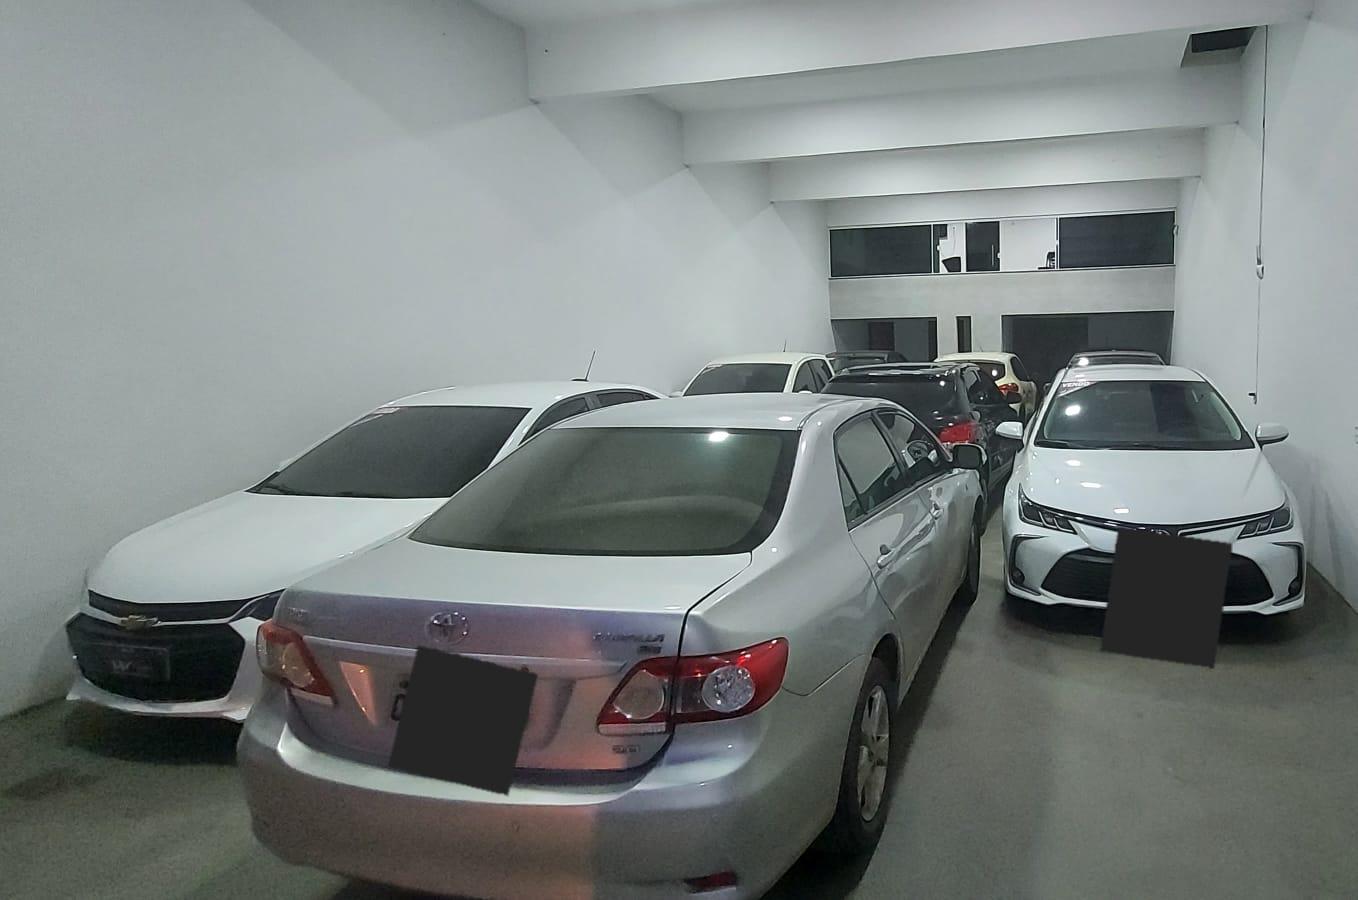 Onze veículos apreendidos em garagem